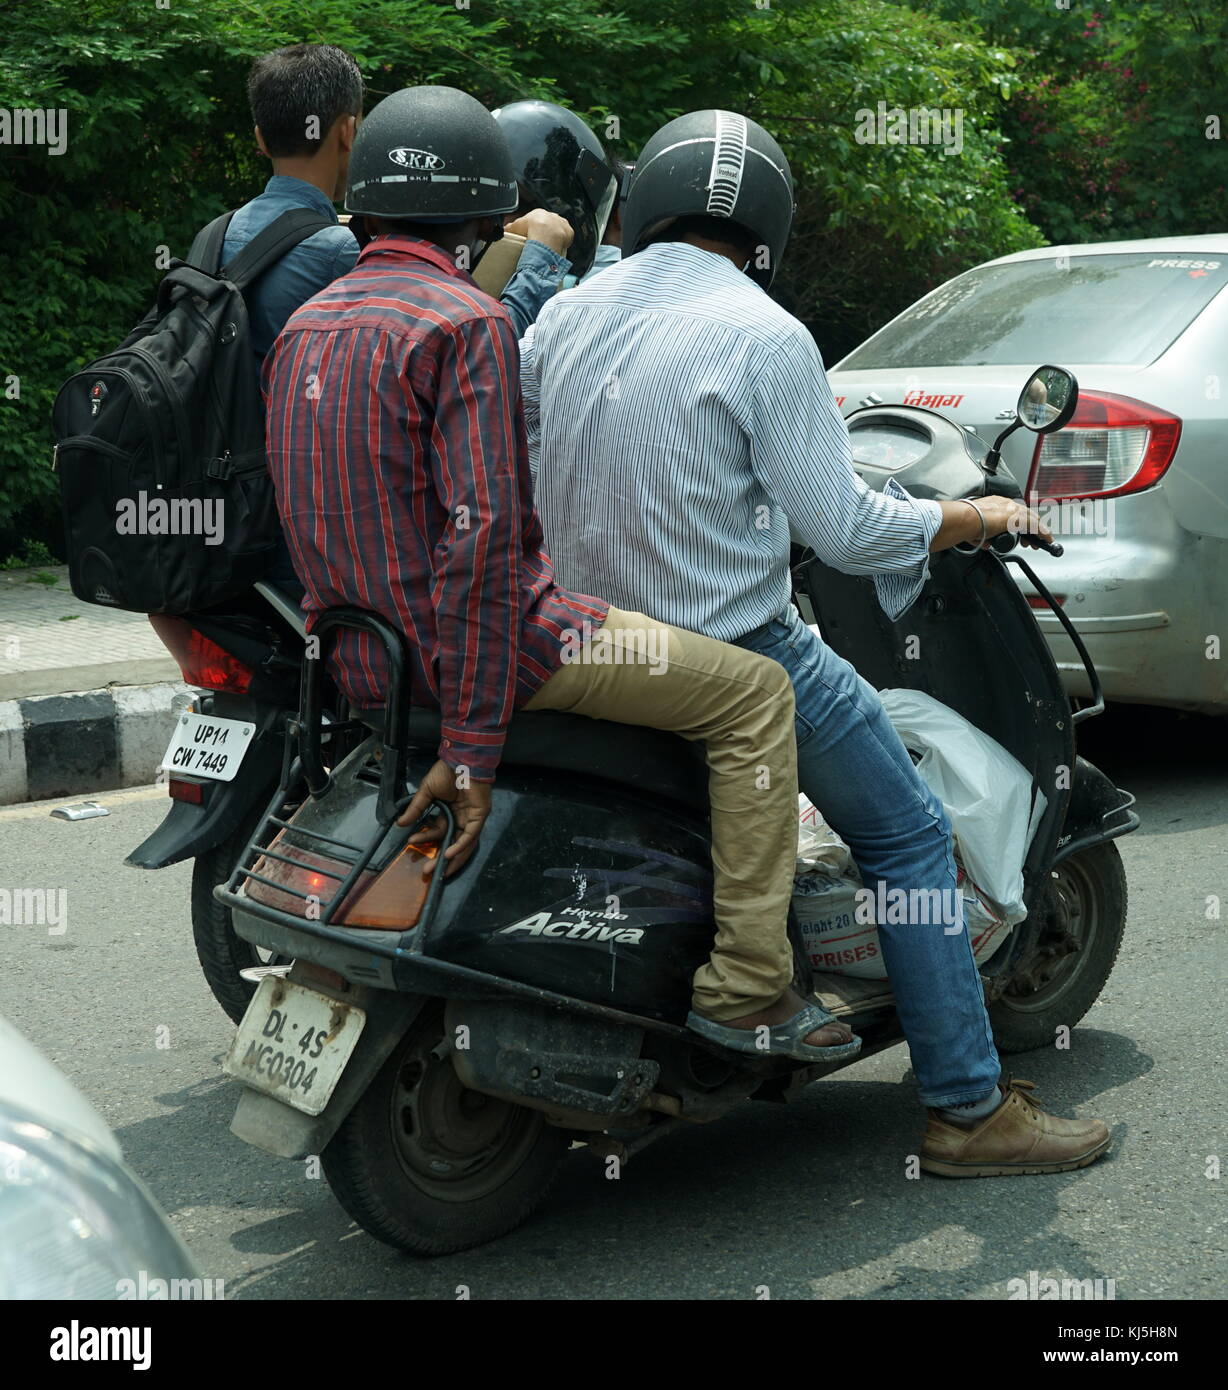 Les motos sont utilisés pour naviguer dans les rues surpeuplées à New Delhi , Inde Banque D'Images